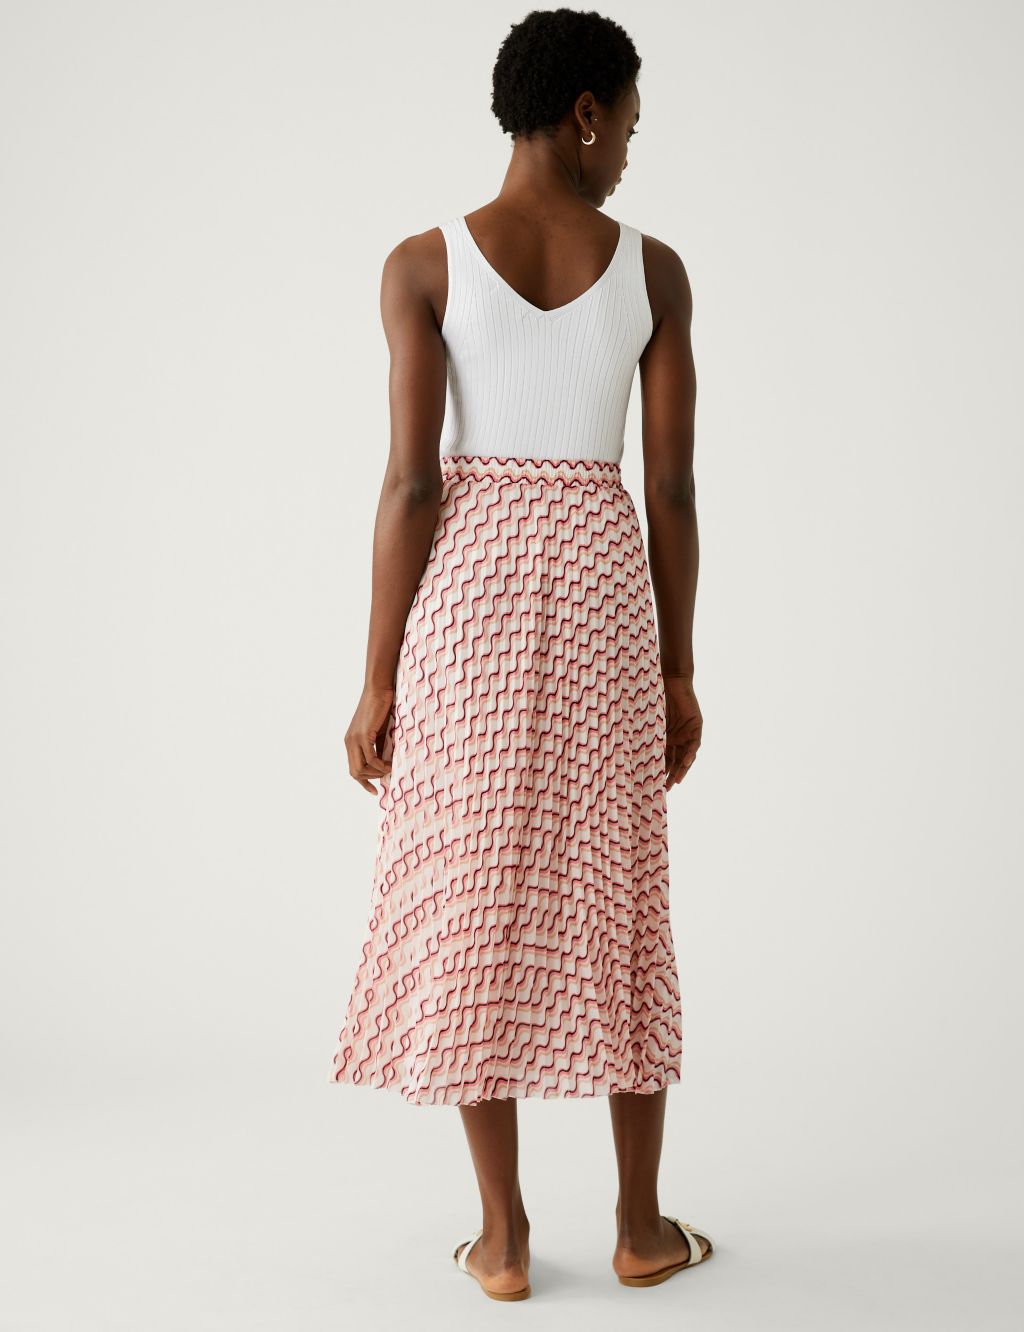 Printed Pleated Midaxi Skirt image 5